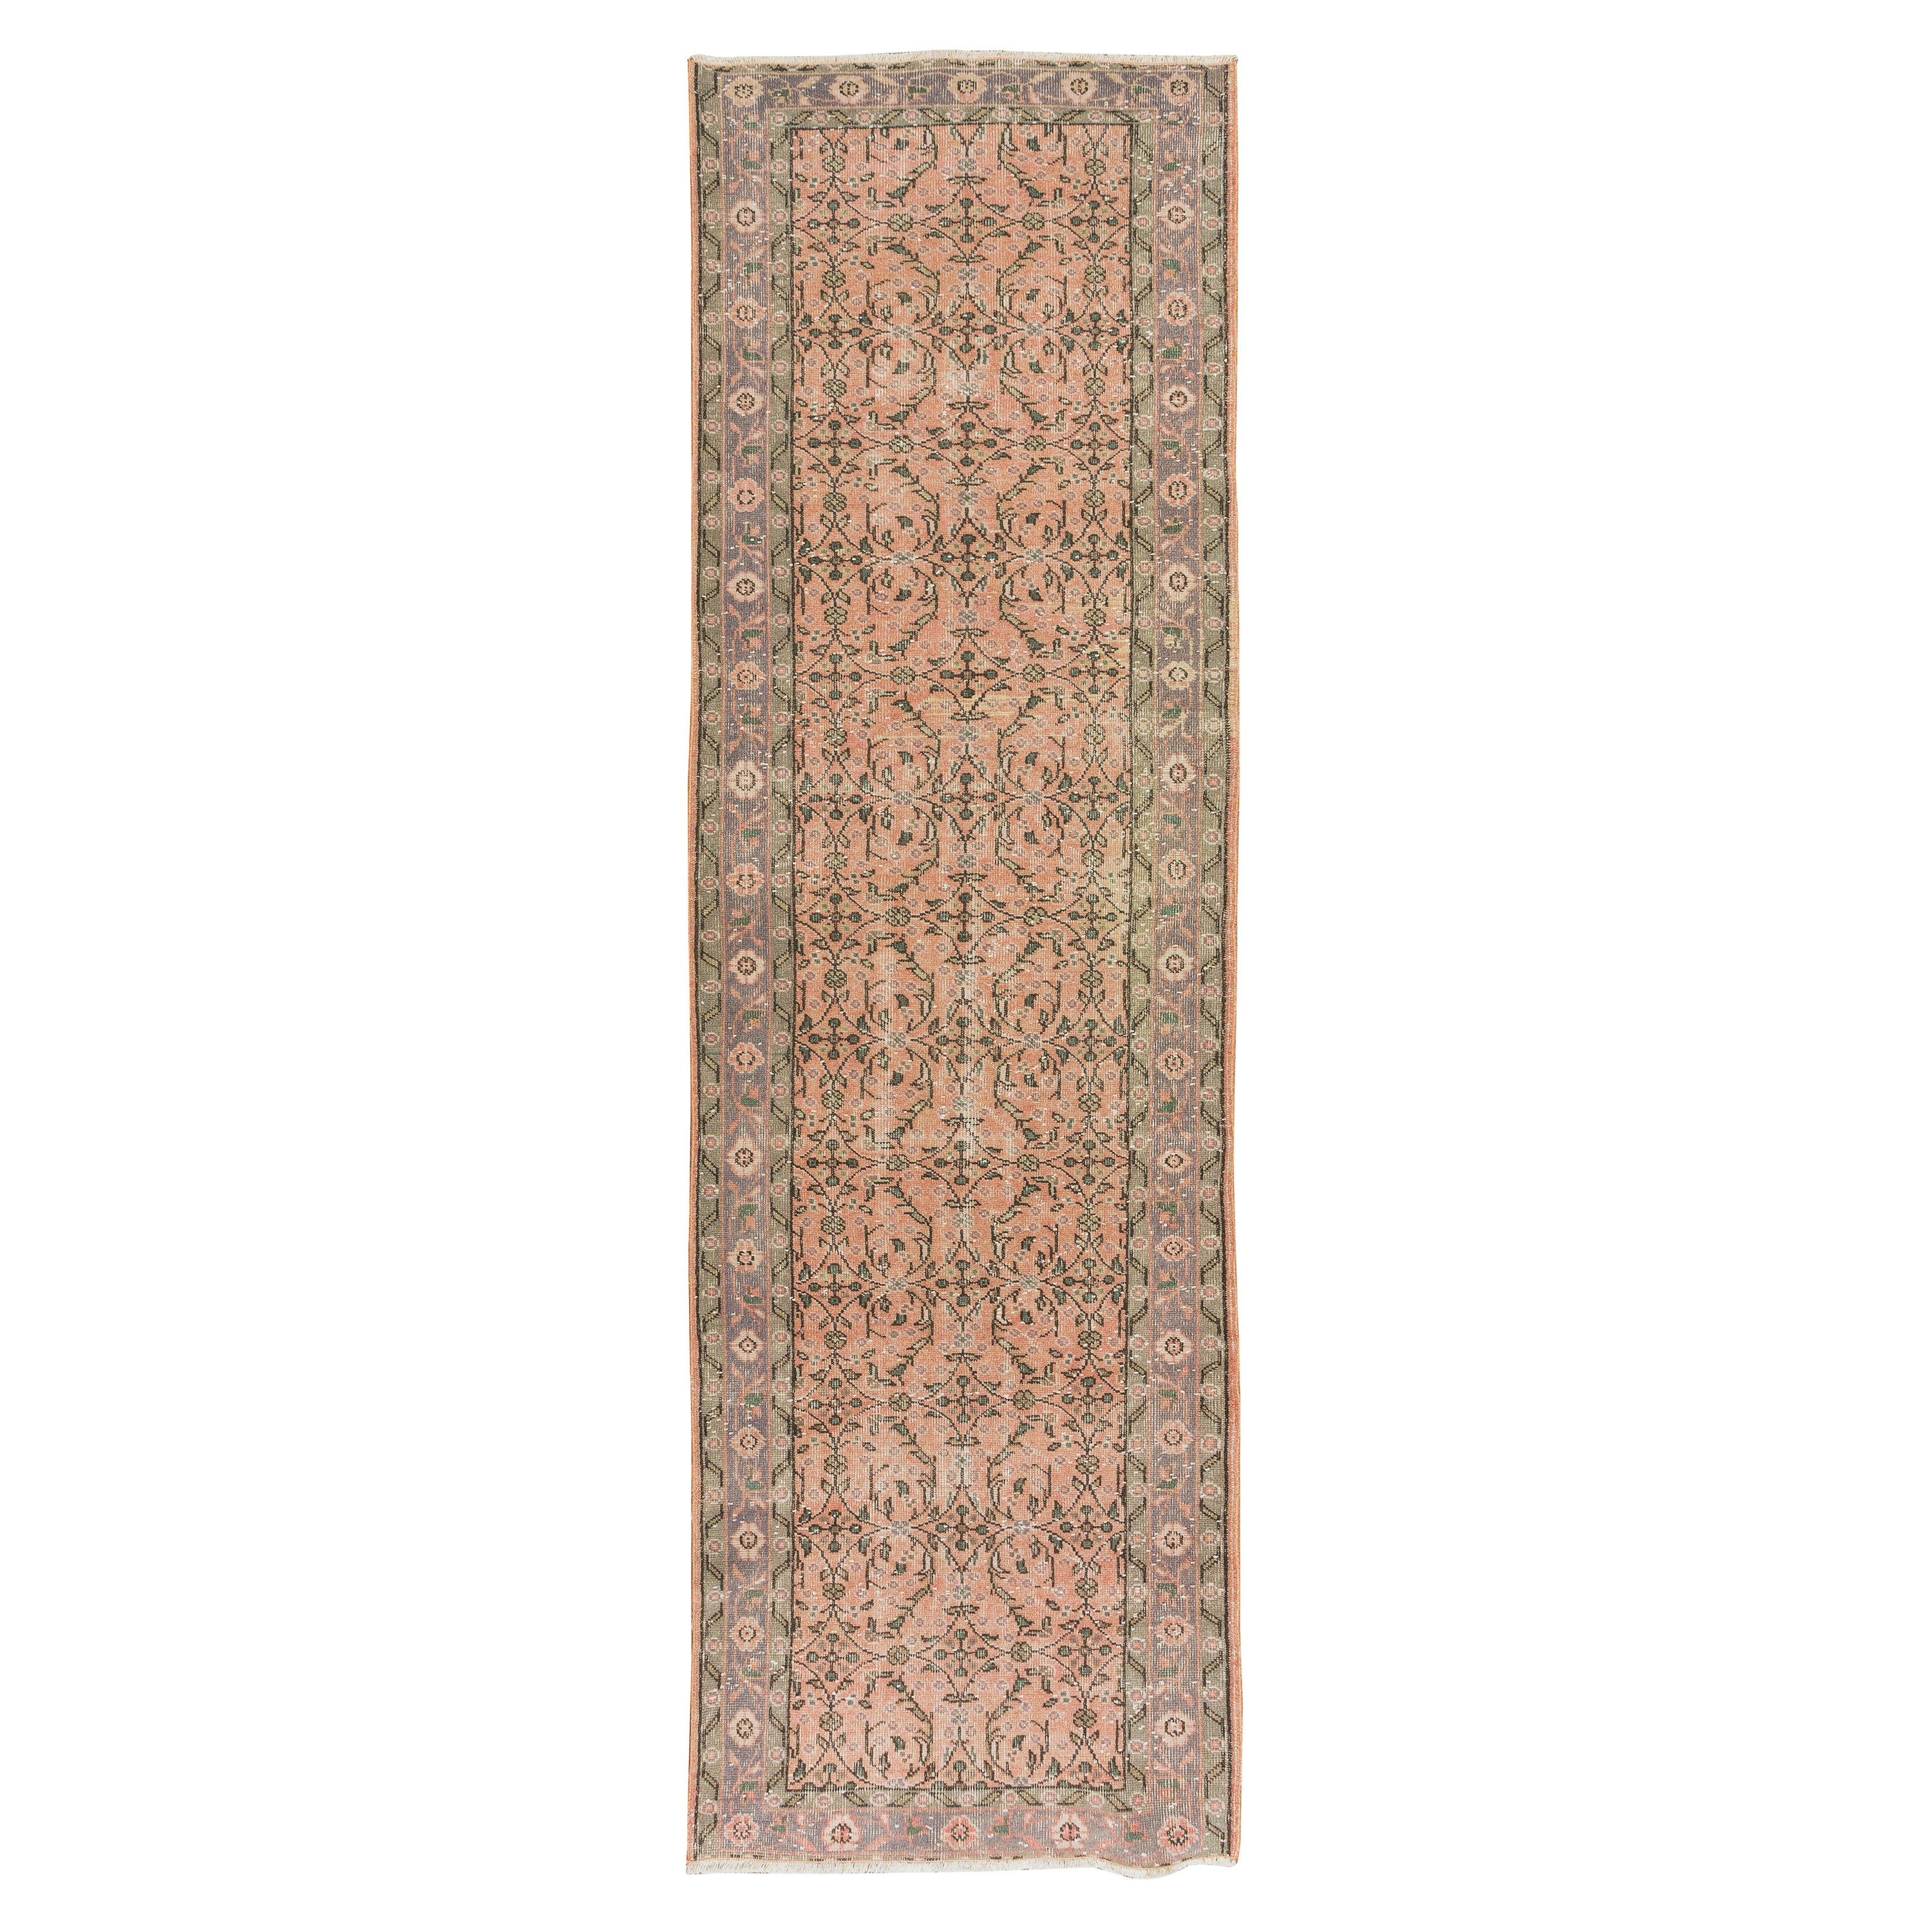 3.3x10.8 ft Vintage Handmade Turkish Runner Rug with Floral Design for Hallway